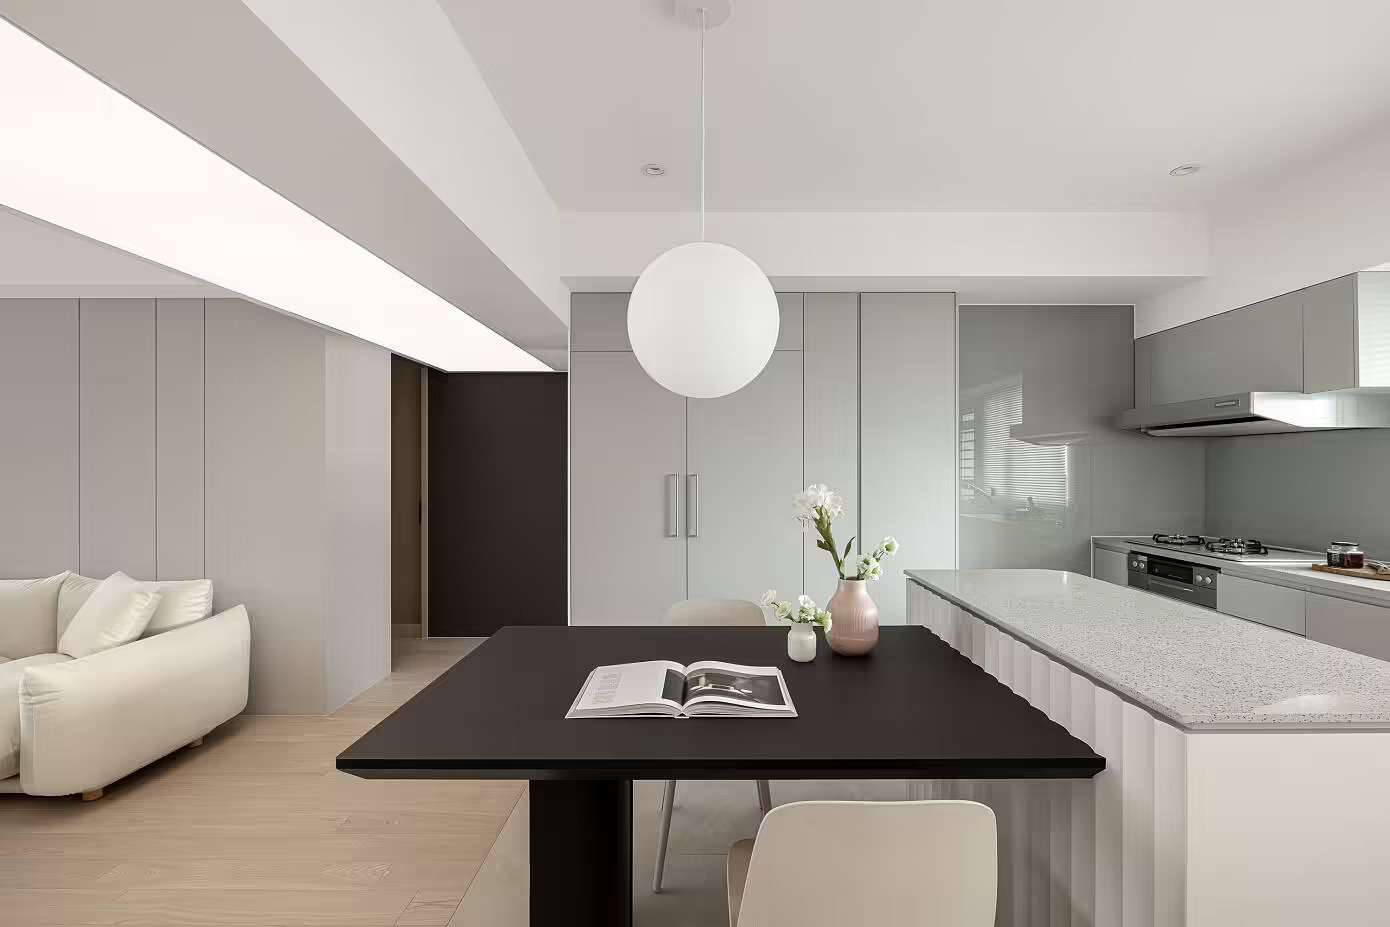 Phòng bếp và khu vực ăn uống được bố trí ở góc trái phòng khách, sử dụng gạch lát nền phân vùng với sàn gỗ. Bếp thiết kế đơn giản nhưng tiện nghi với bề mặt nội thất sáng bóng cùng hệ thống hút mùi hiện đại.